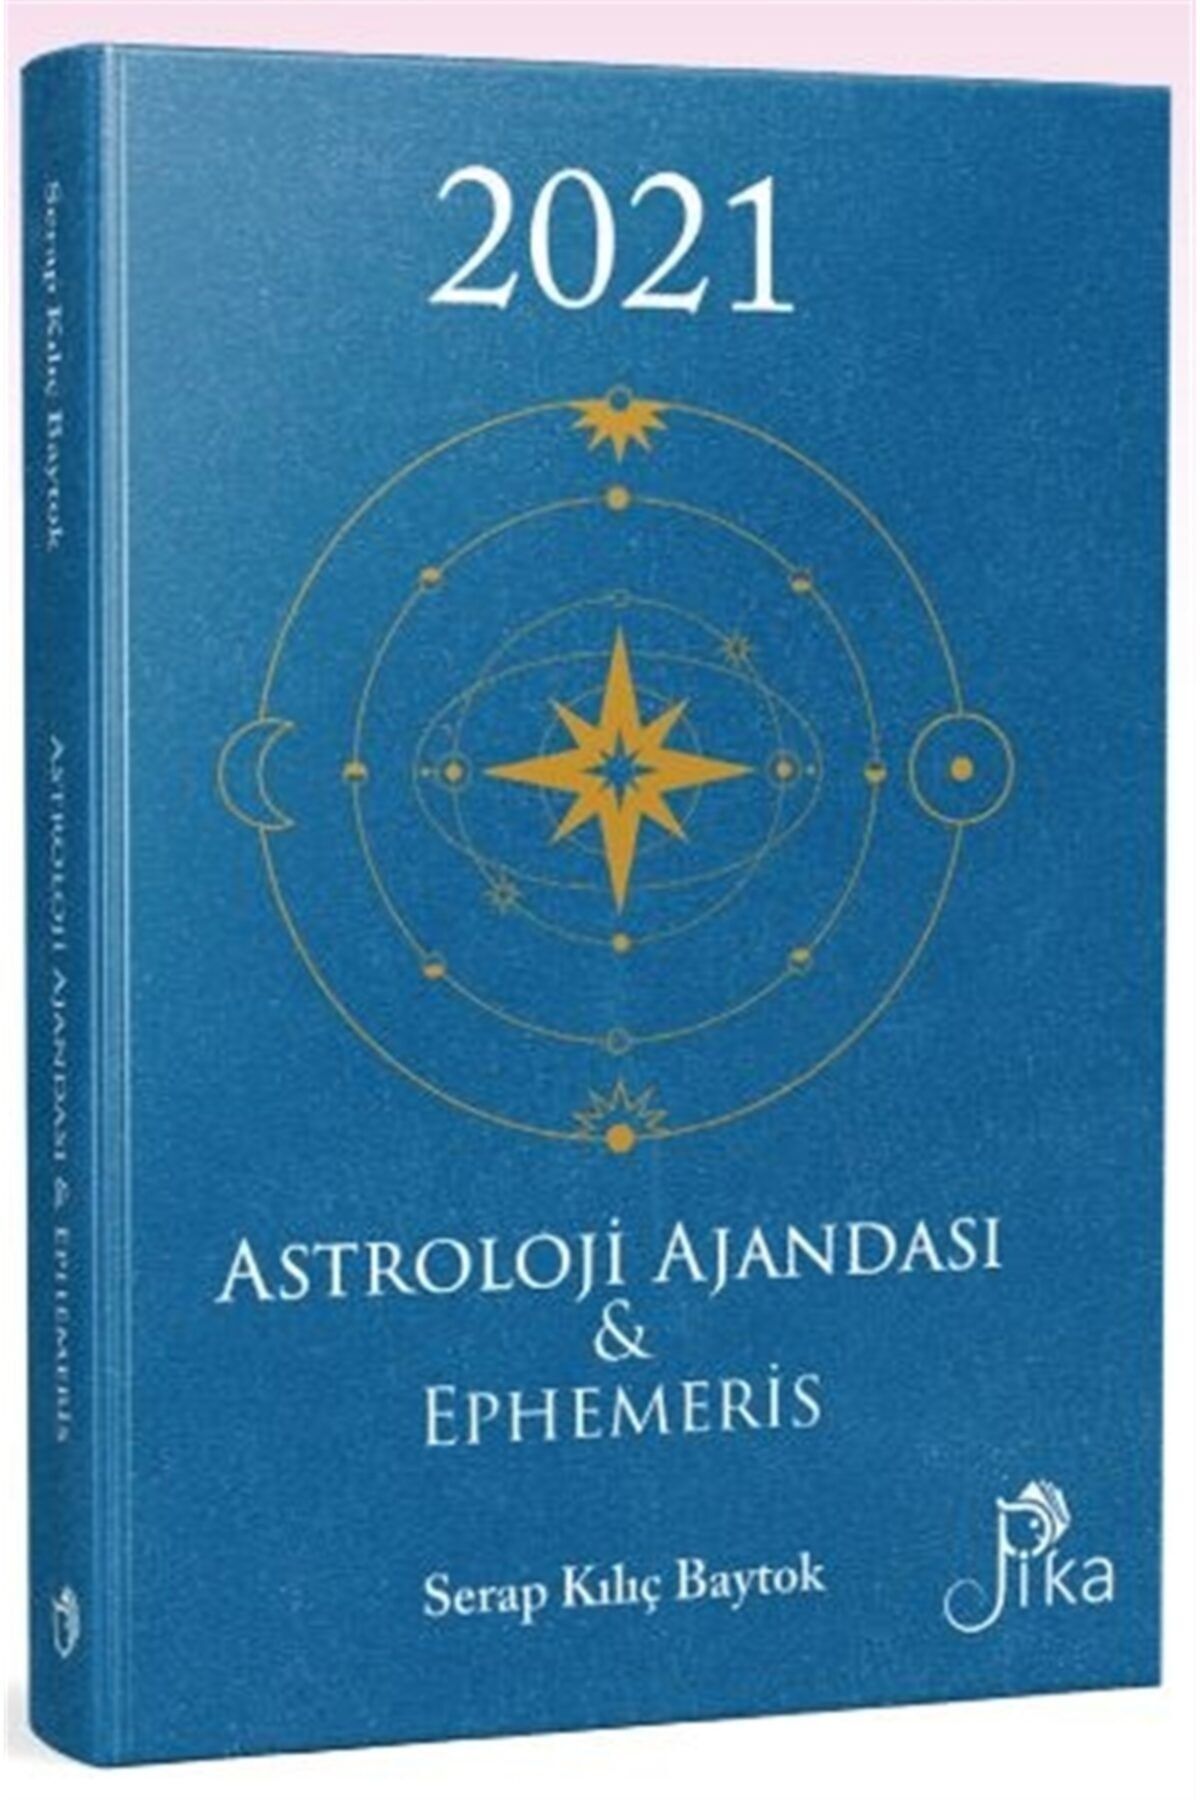 Pika Yayınevi 2021 Astroloji Ajandası Ve Ephemeris - Serap Kılıç Baytok 9786057011206